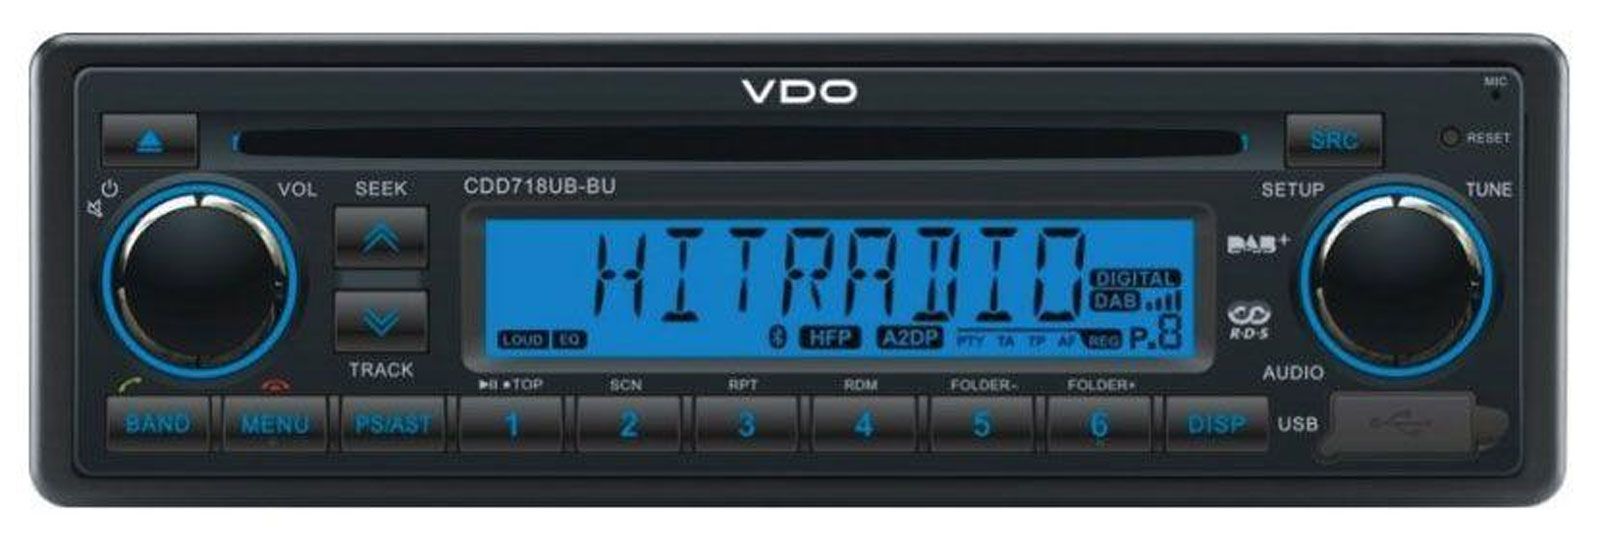 VDO CDD718UB-BU - CD/MP3-Autoradio mit Bluetooth / DAB / USB / AUX-IN